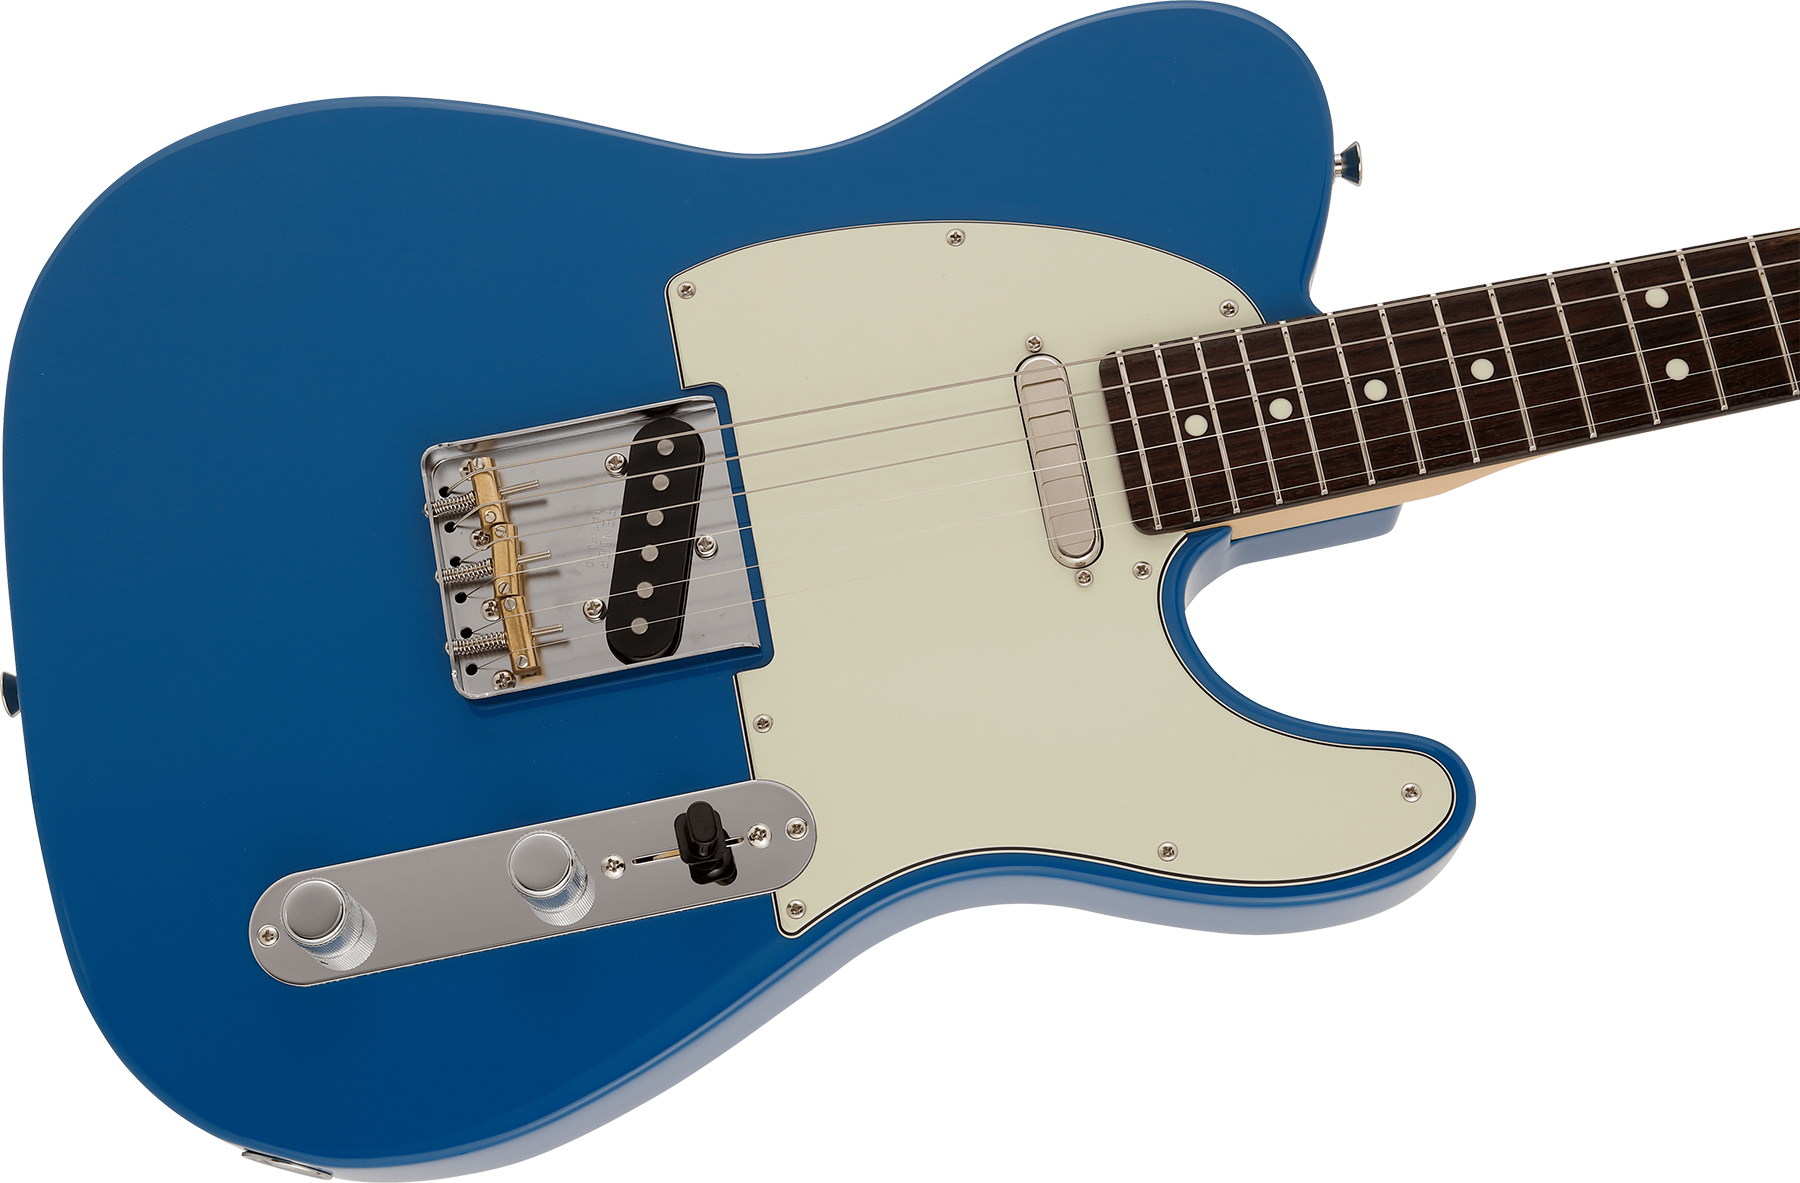 Fender Tele Hybrid Ii Jap 2s Ht Mn - Forest Blue - Tel shape electric guitar - Variation 2